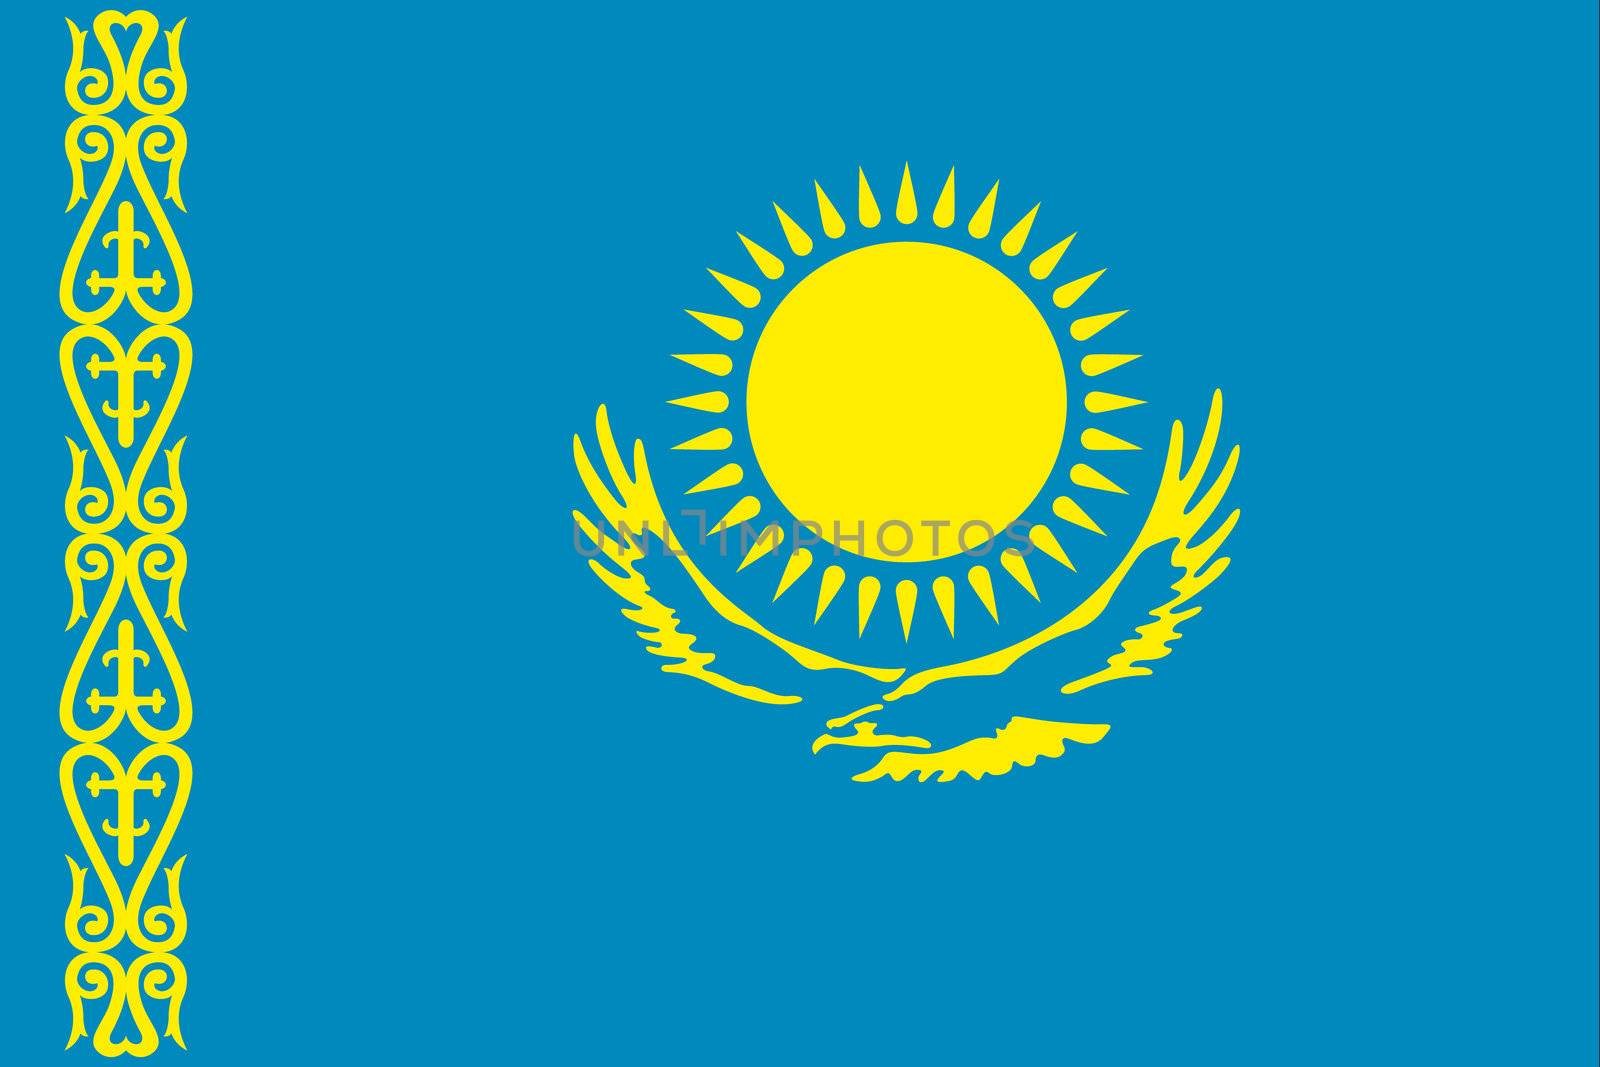 An illustration of the flag of Kazakhstan